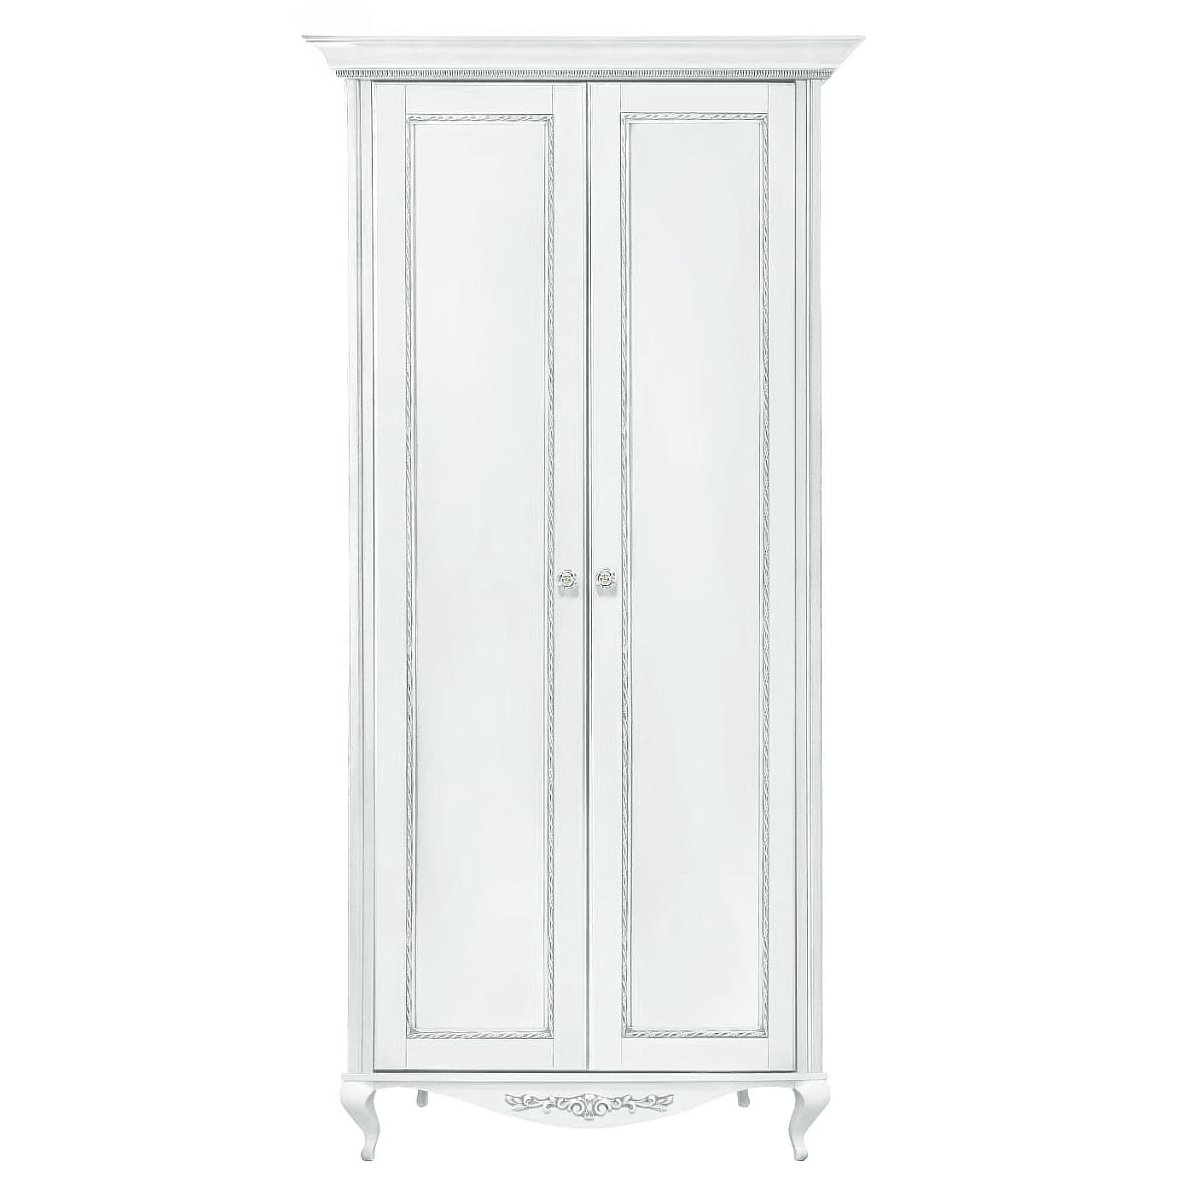 Шкаф платяной Timber Неаполь, 2-х дверный с полками 114x65x227 см цвет: белый с серебром (T-522П)T-522П